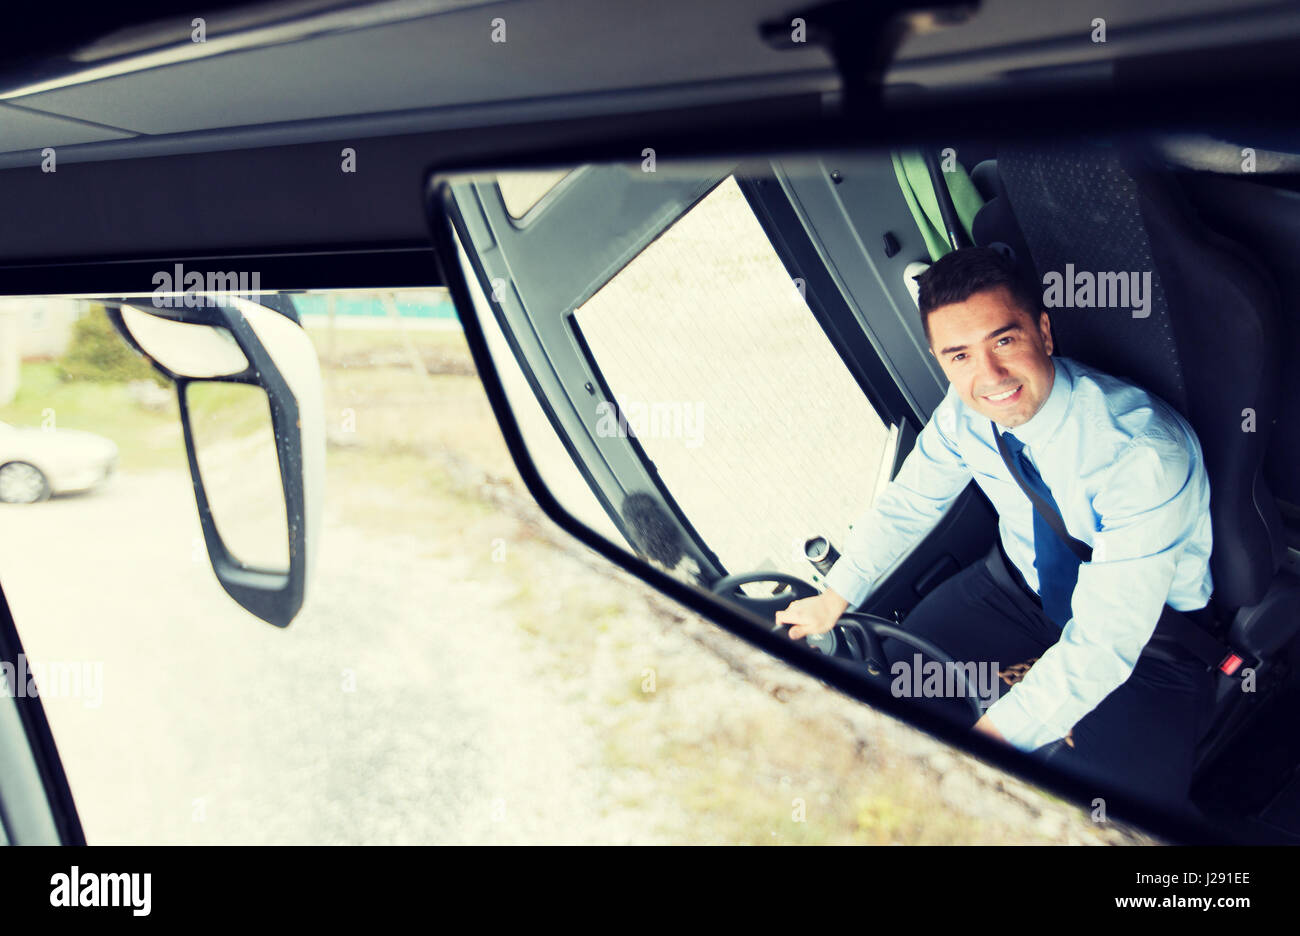 Водитель смотрит в зеркало. Водитель в зеркале. Водитель в отражении зеркала. Зеркало водителя автобуса.